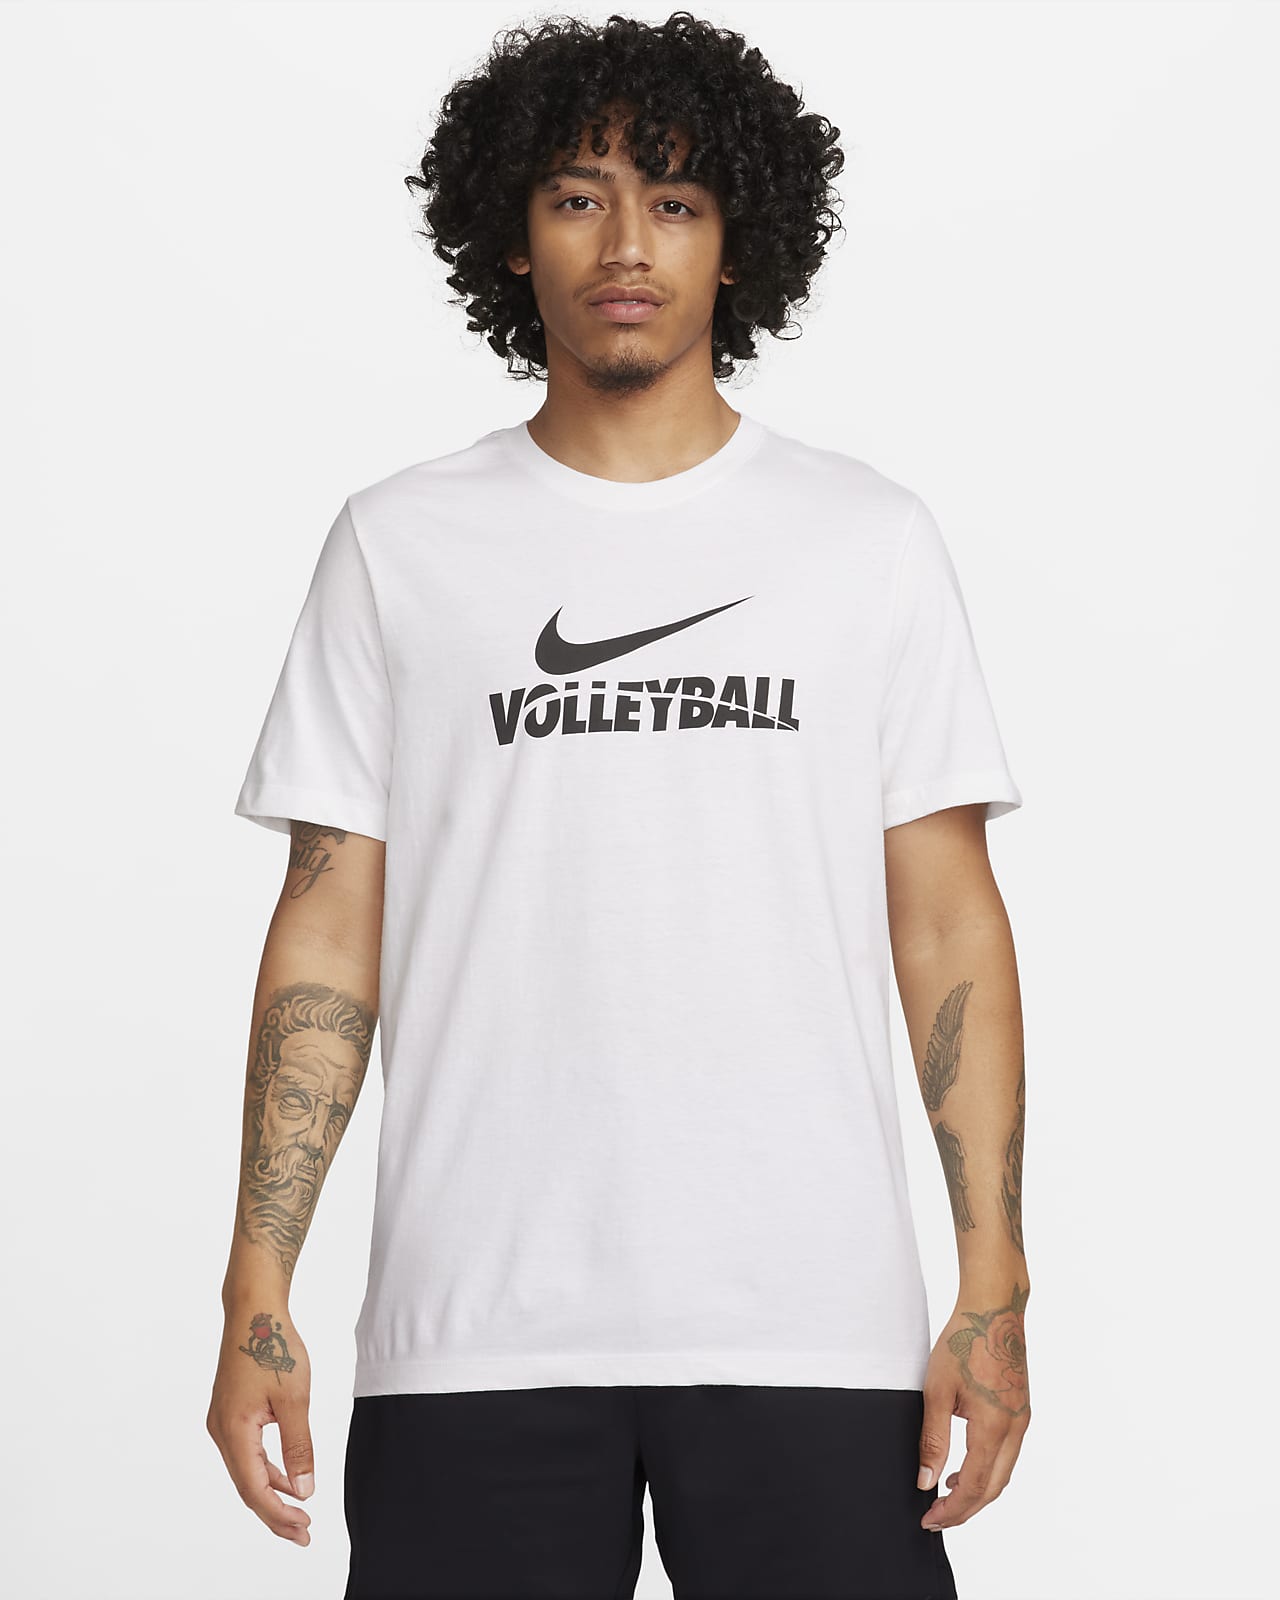 Amigo Objetivo Ennegrecer Nike Volleyball Men's T-Shirt. Nike.com